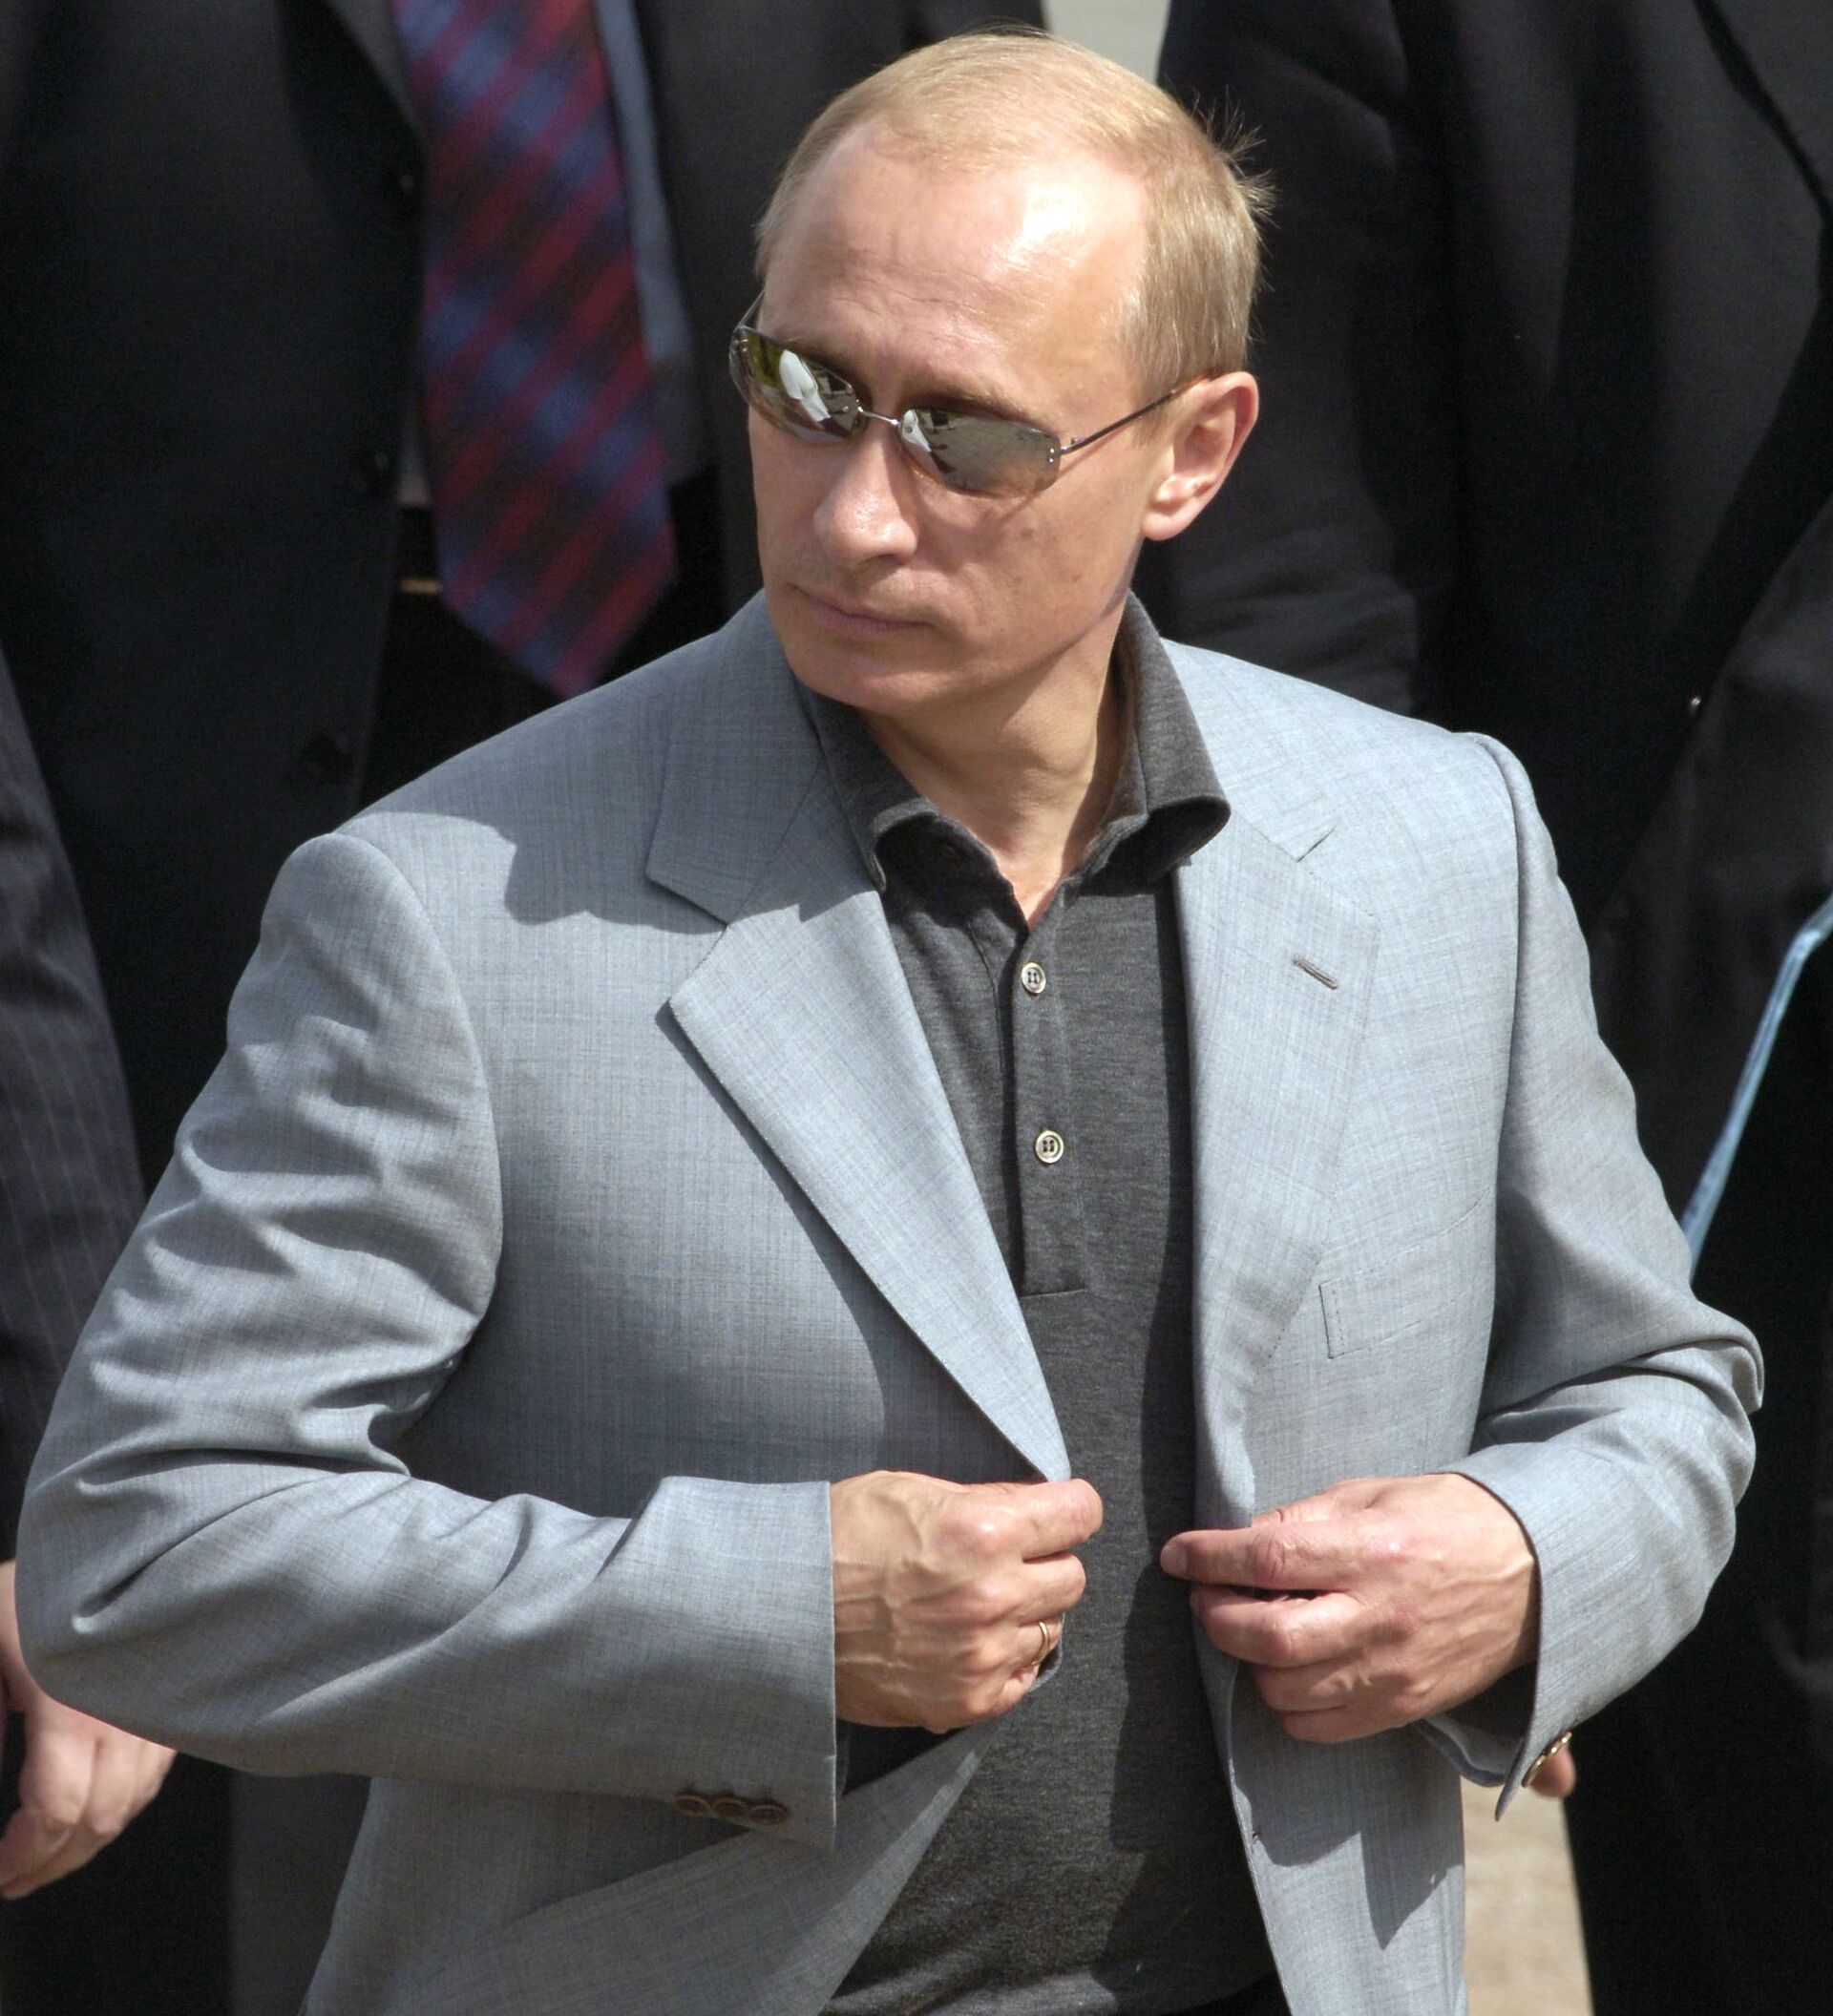 Путин Владимир Владимирович в костюме